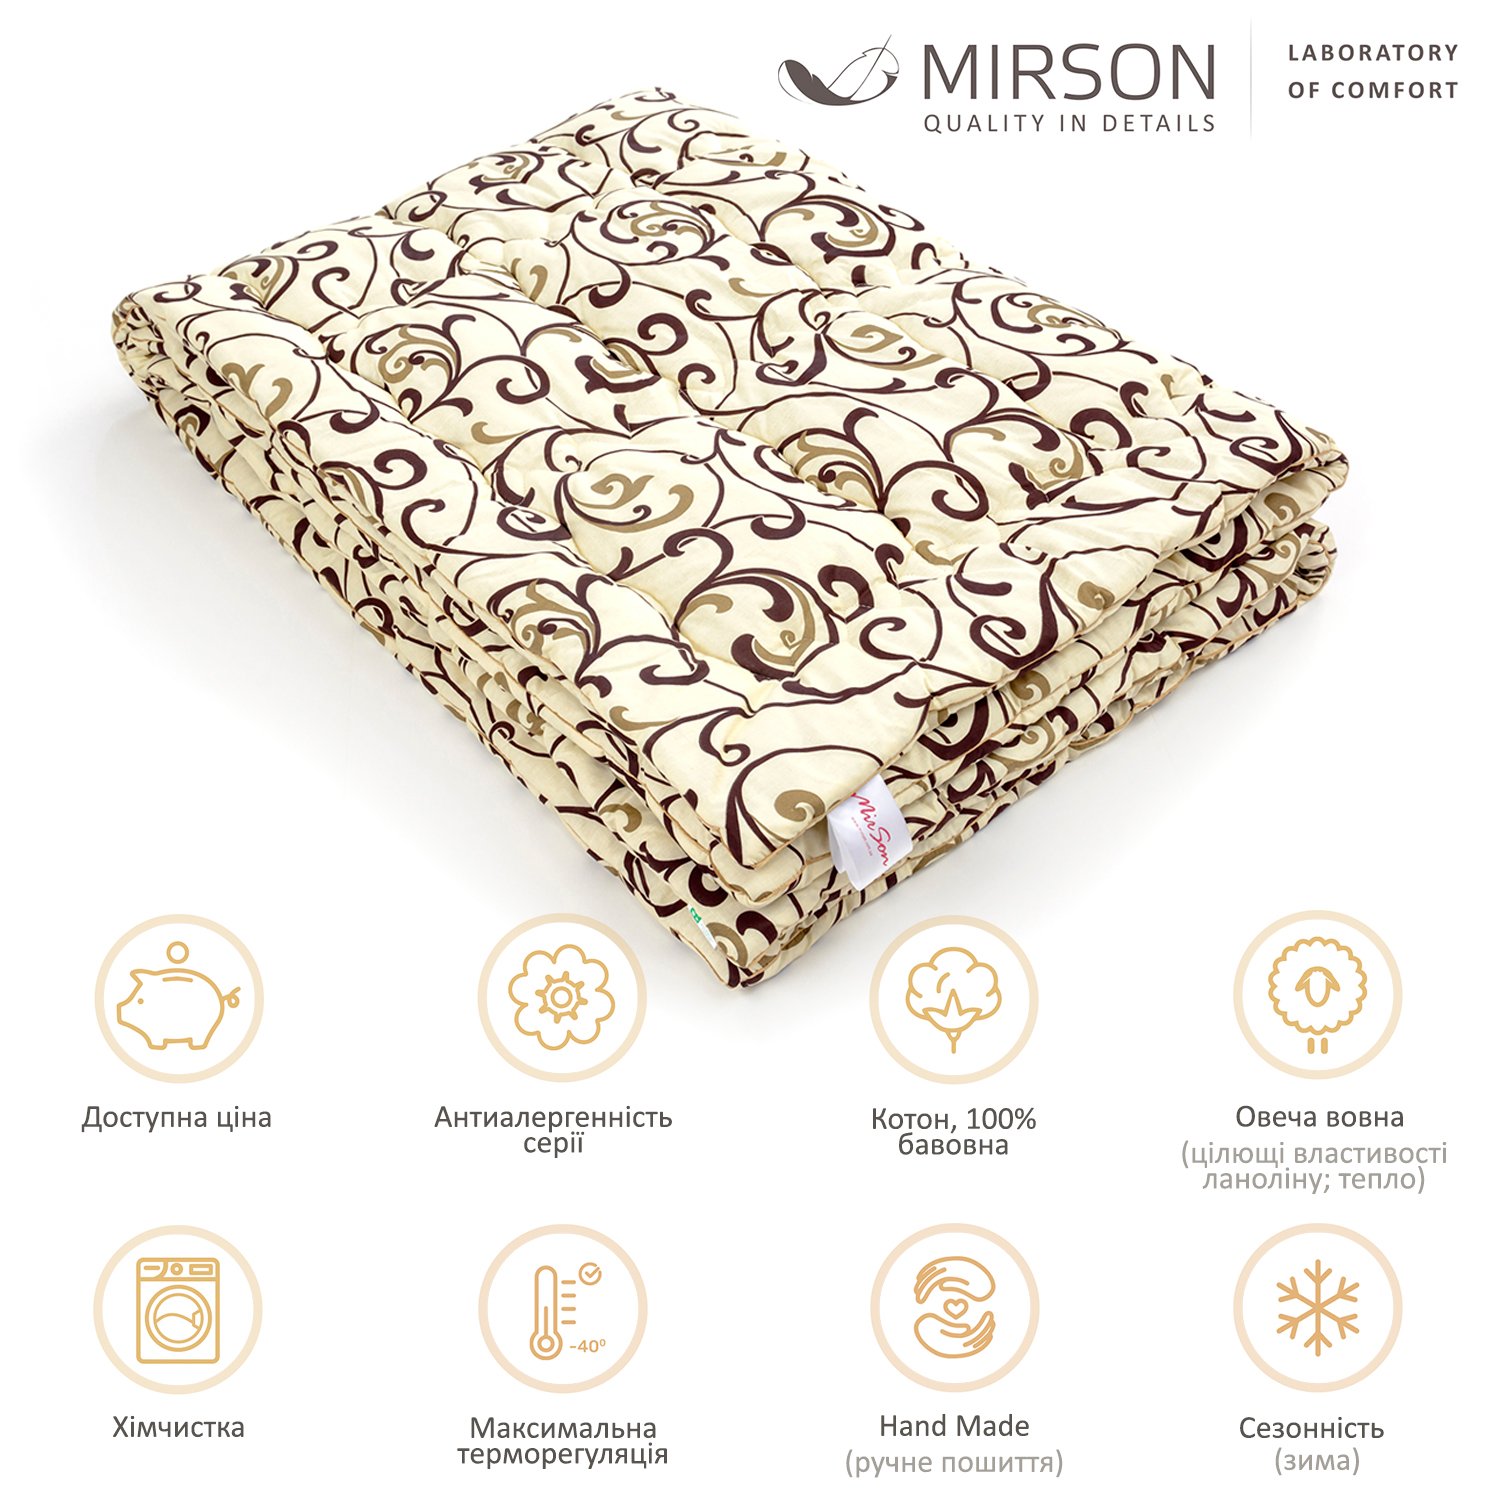 Одеяло шерстяное MirSon Hand Made №163, зимнее, 140x205 см, бежевое с узором - фото 5